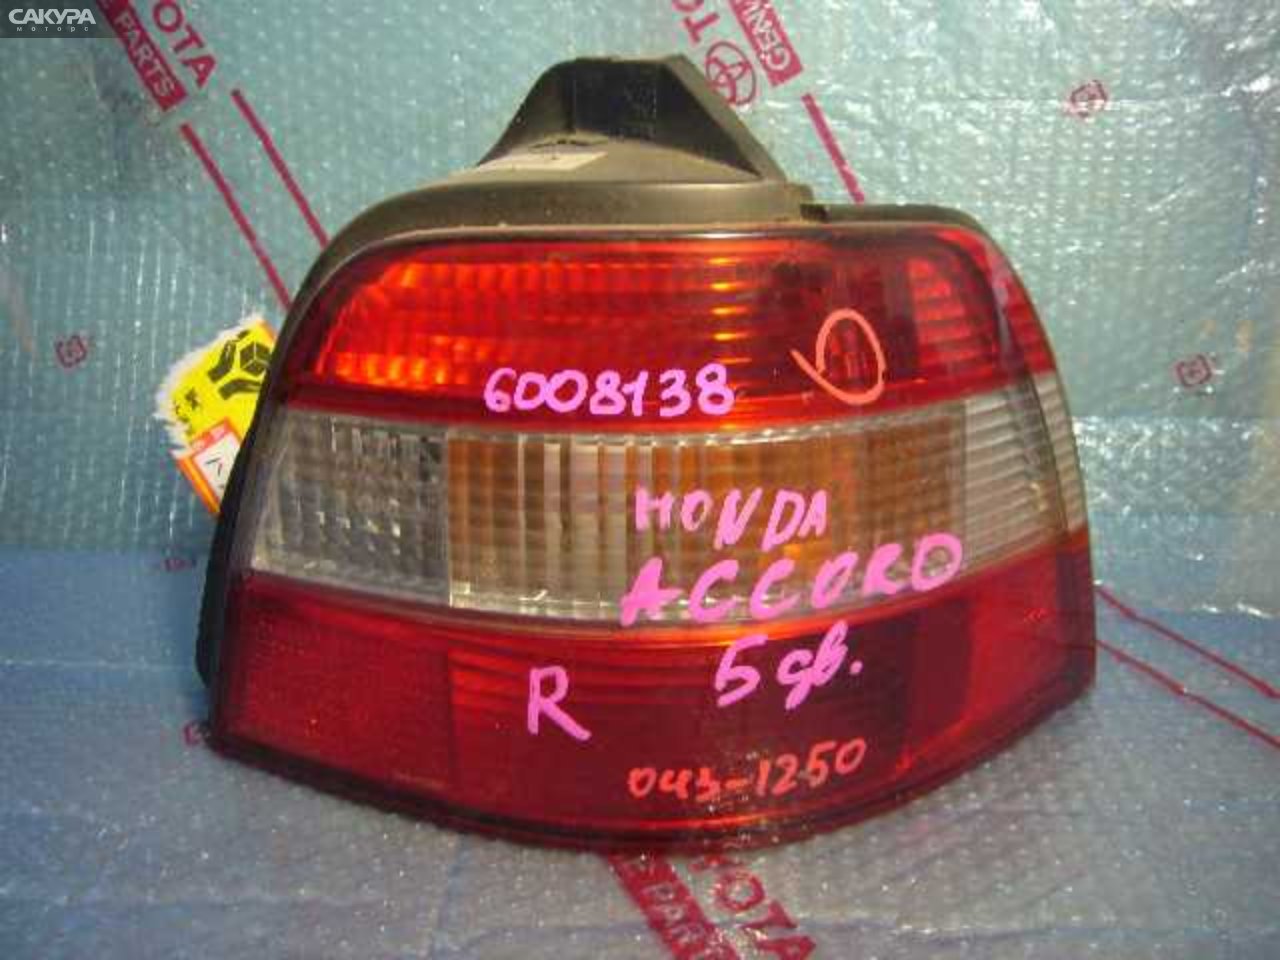 Фонарь стоп-сигнала правый Honda Accord Wagon CE1 043-1250: купить в Сакура Кемерово.